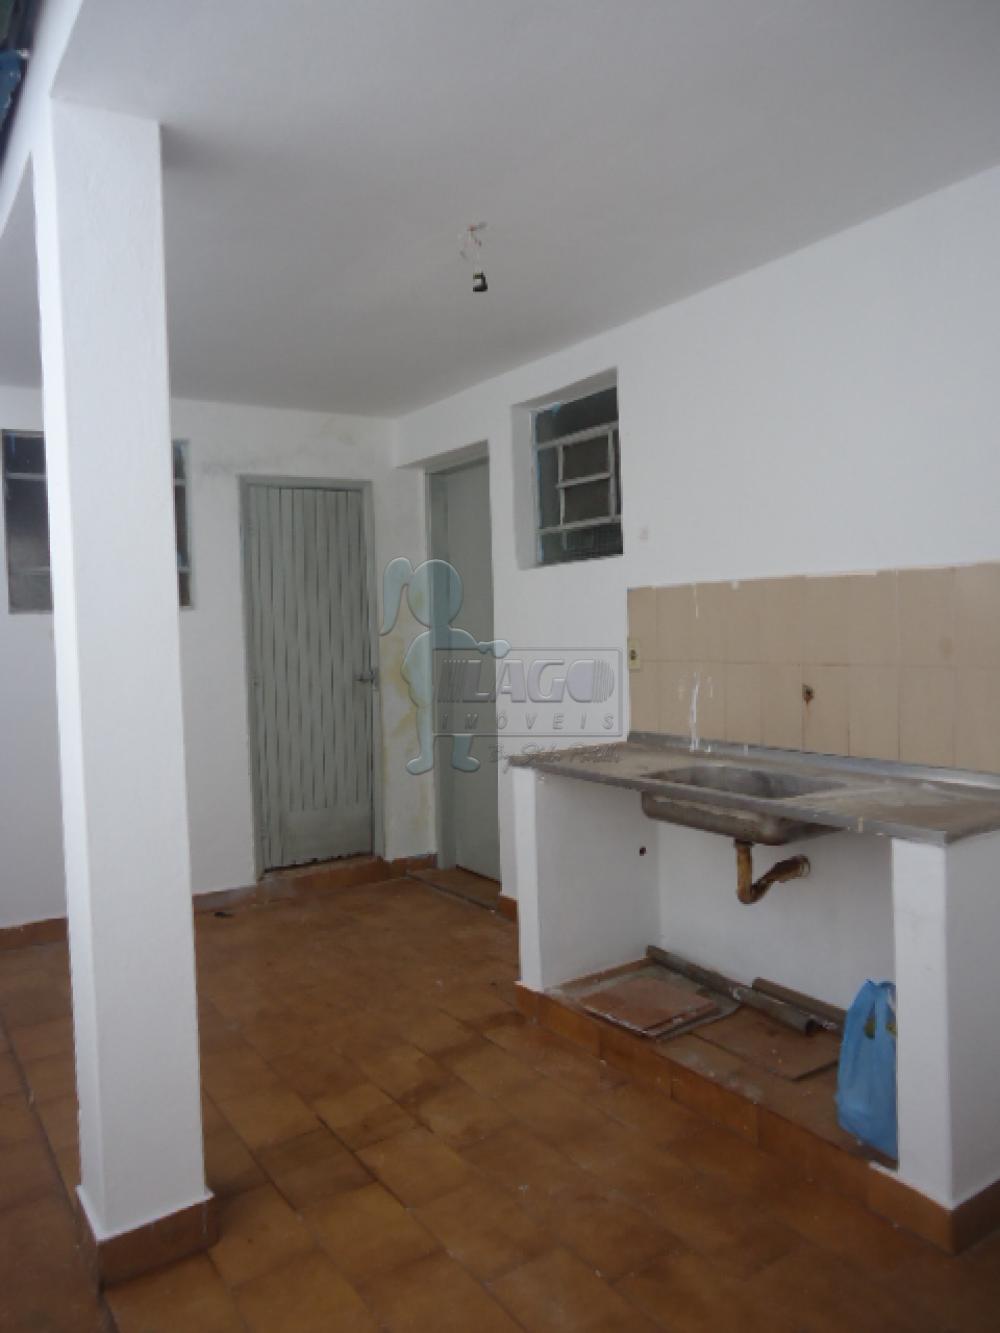 Alugar Casa / Padrão em Ribeirão Preto R$ 520,00 - Foto 5